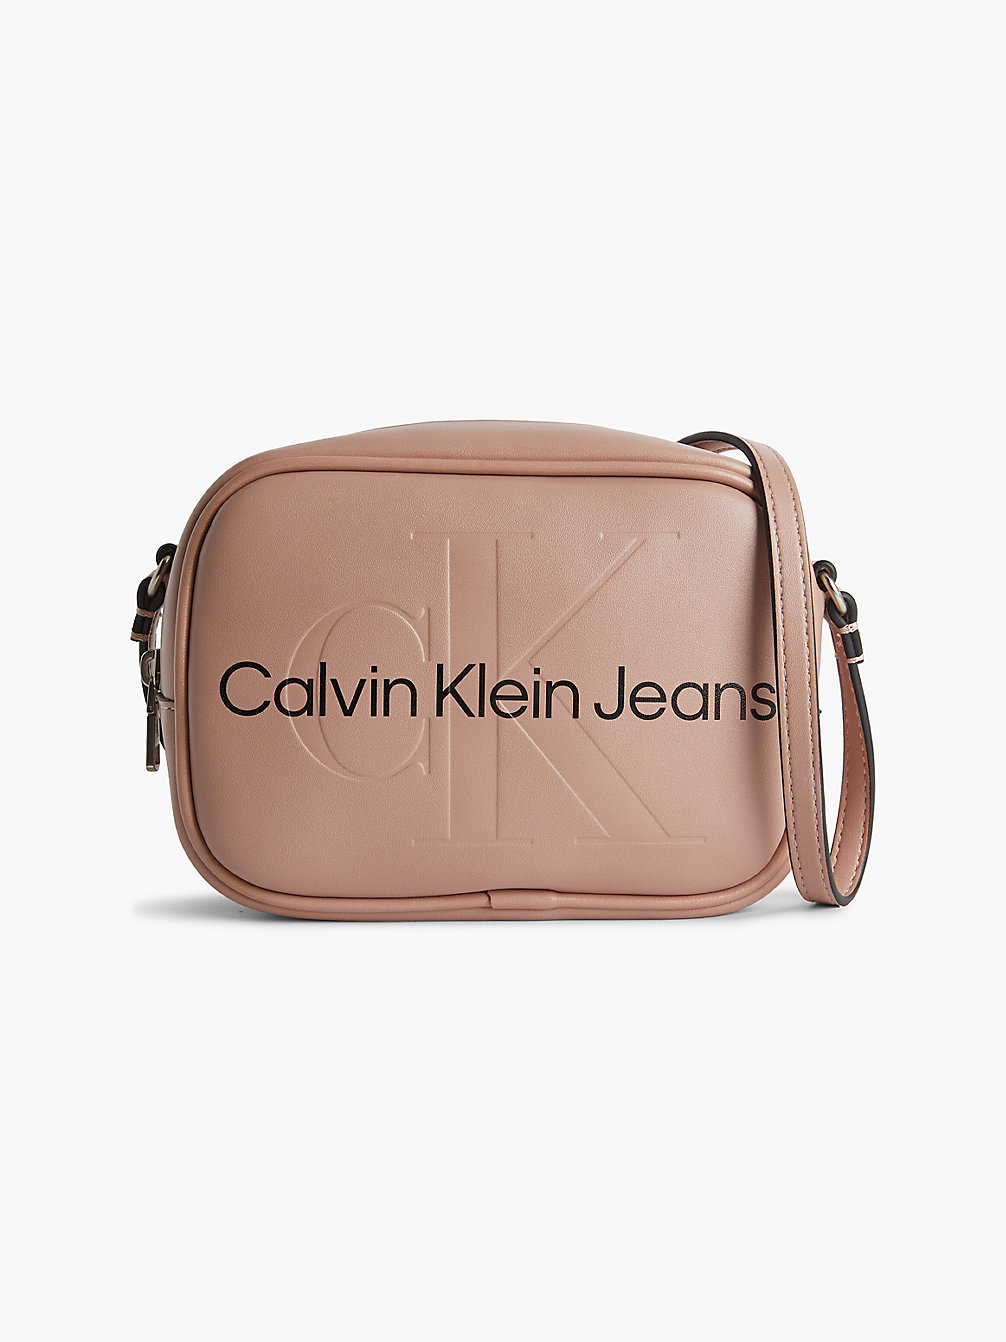 DARK BLUSH > Crossover > undefined dames - Calvin Klein